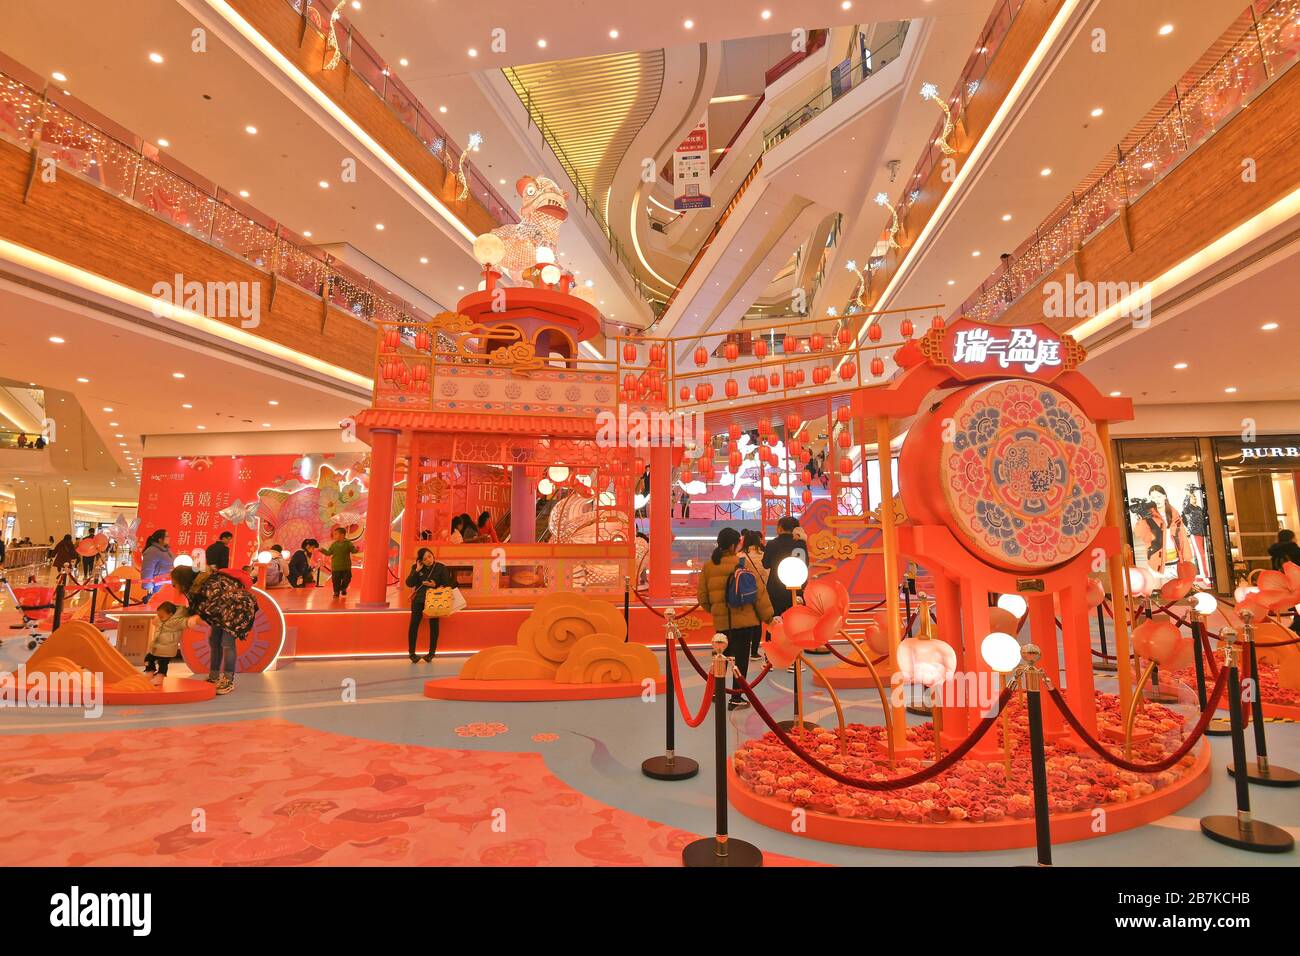 Vista delle sculture di carta esposte in un centro commerciale nella città di Nanning, nella provincia di Guangxi, nel sud della Cina, il 17 gennaio 2020. Foto Stock